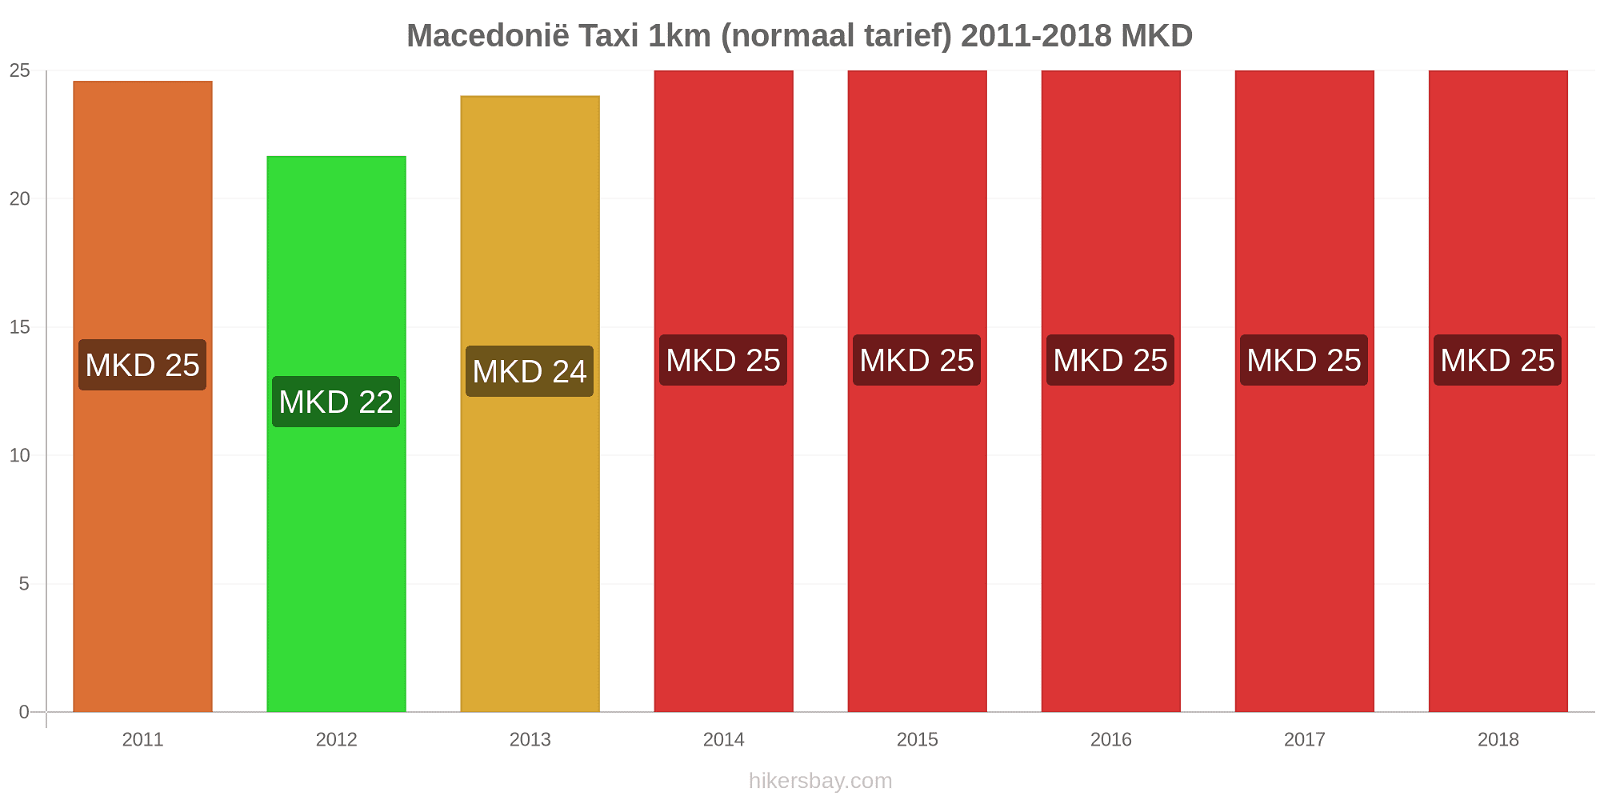 Macedonië prijswijzigingen Taxi 1km (normaal tarief) hikersbay.com